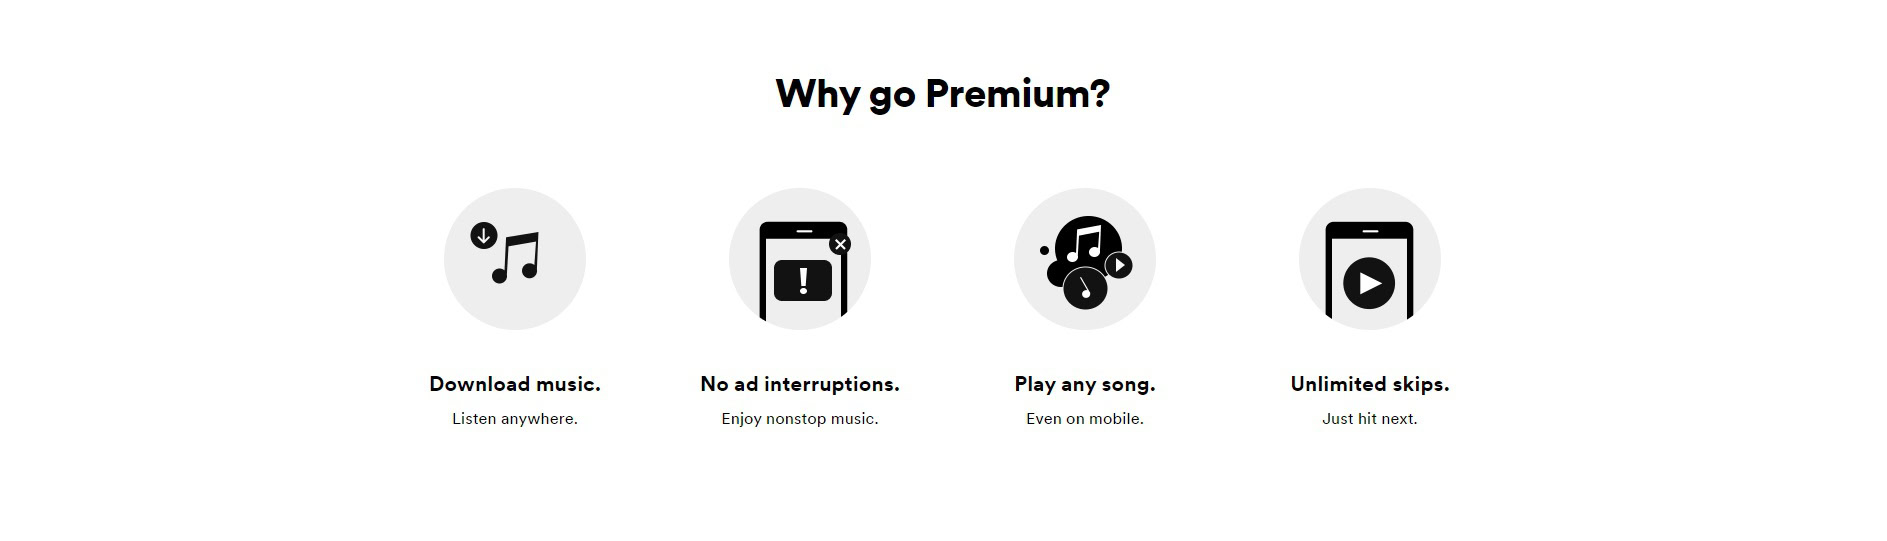 Spotify Por qué convertirse en Premium